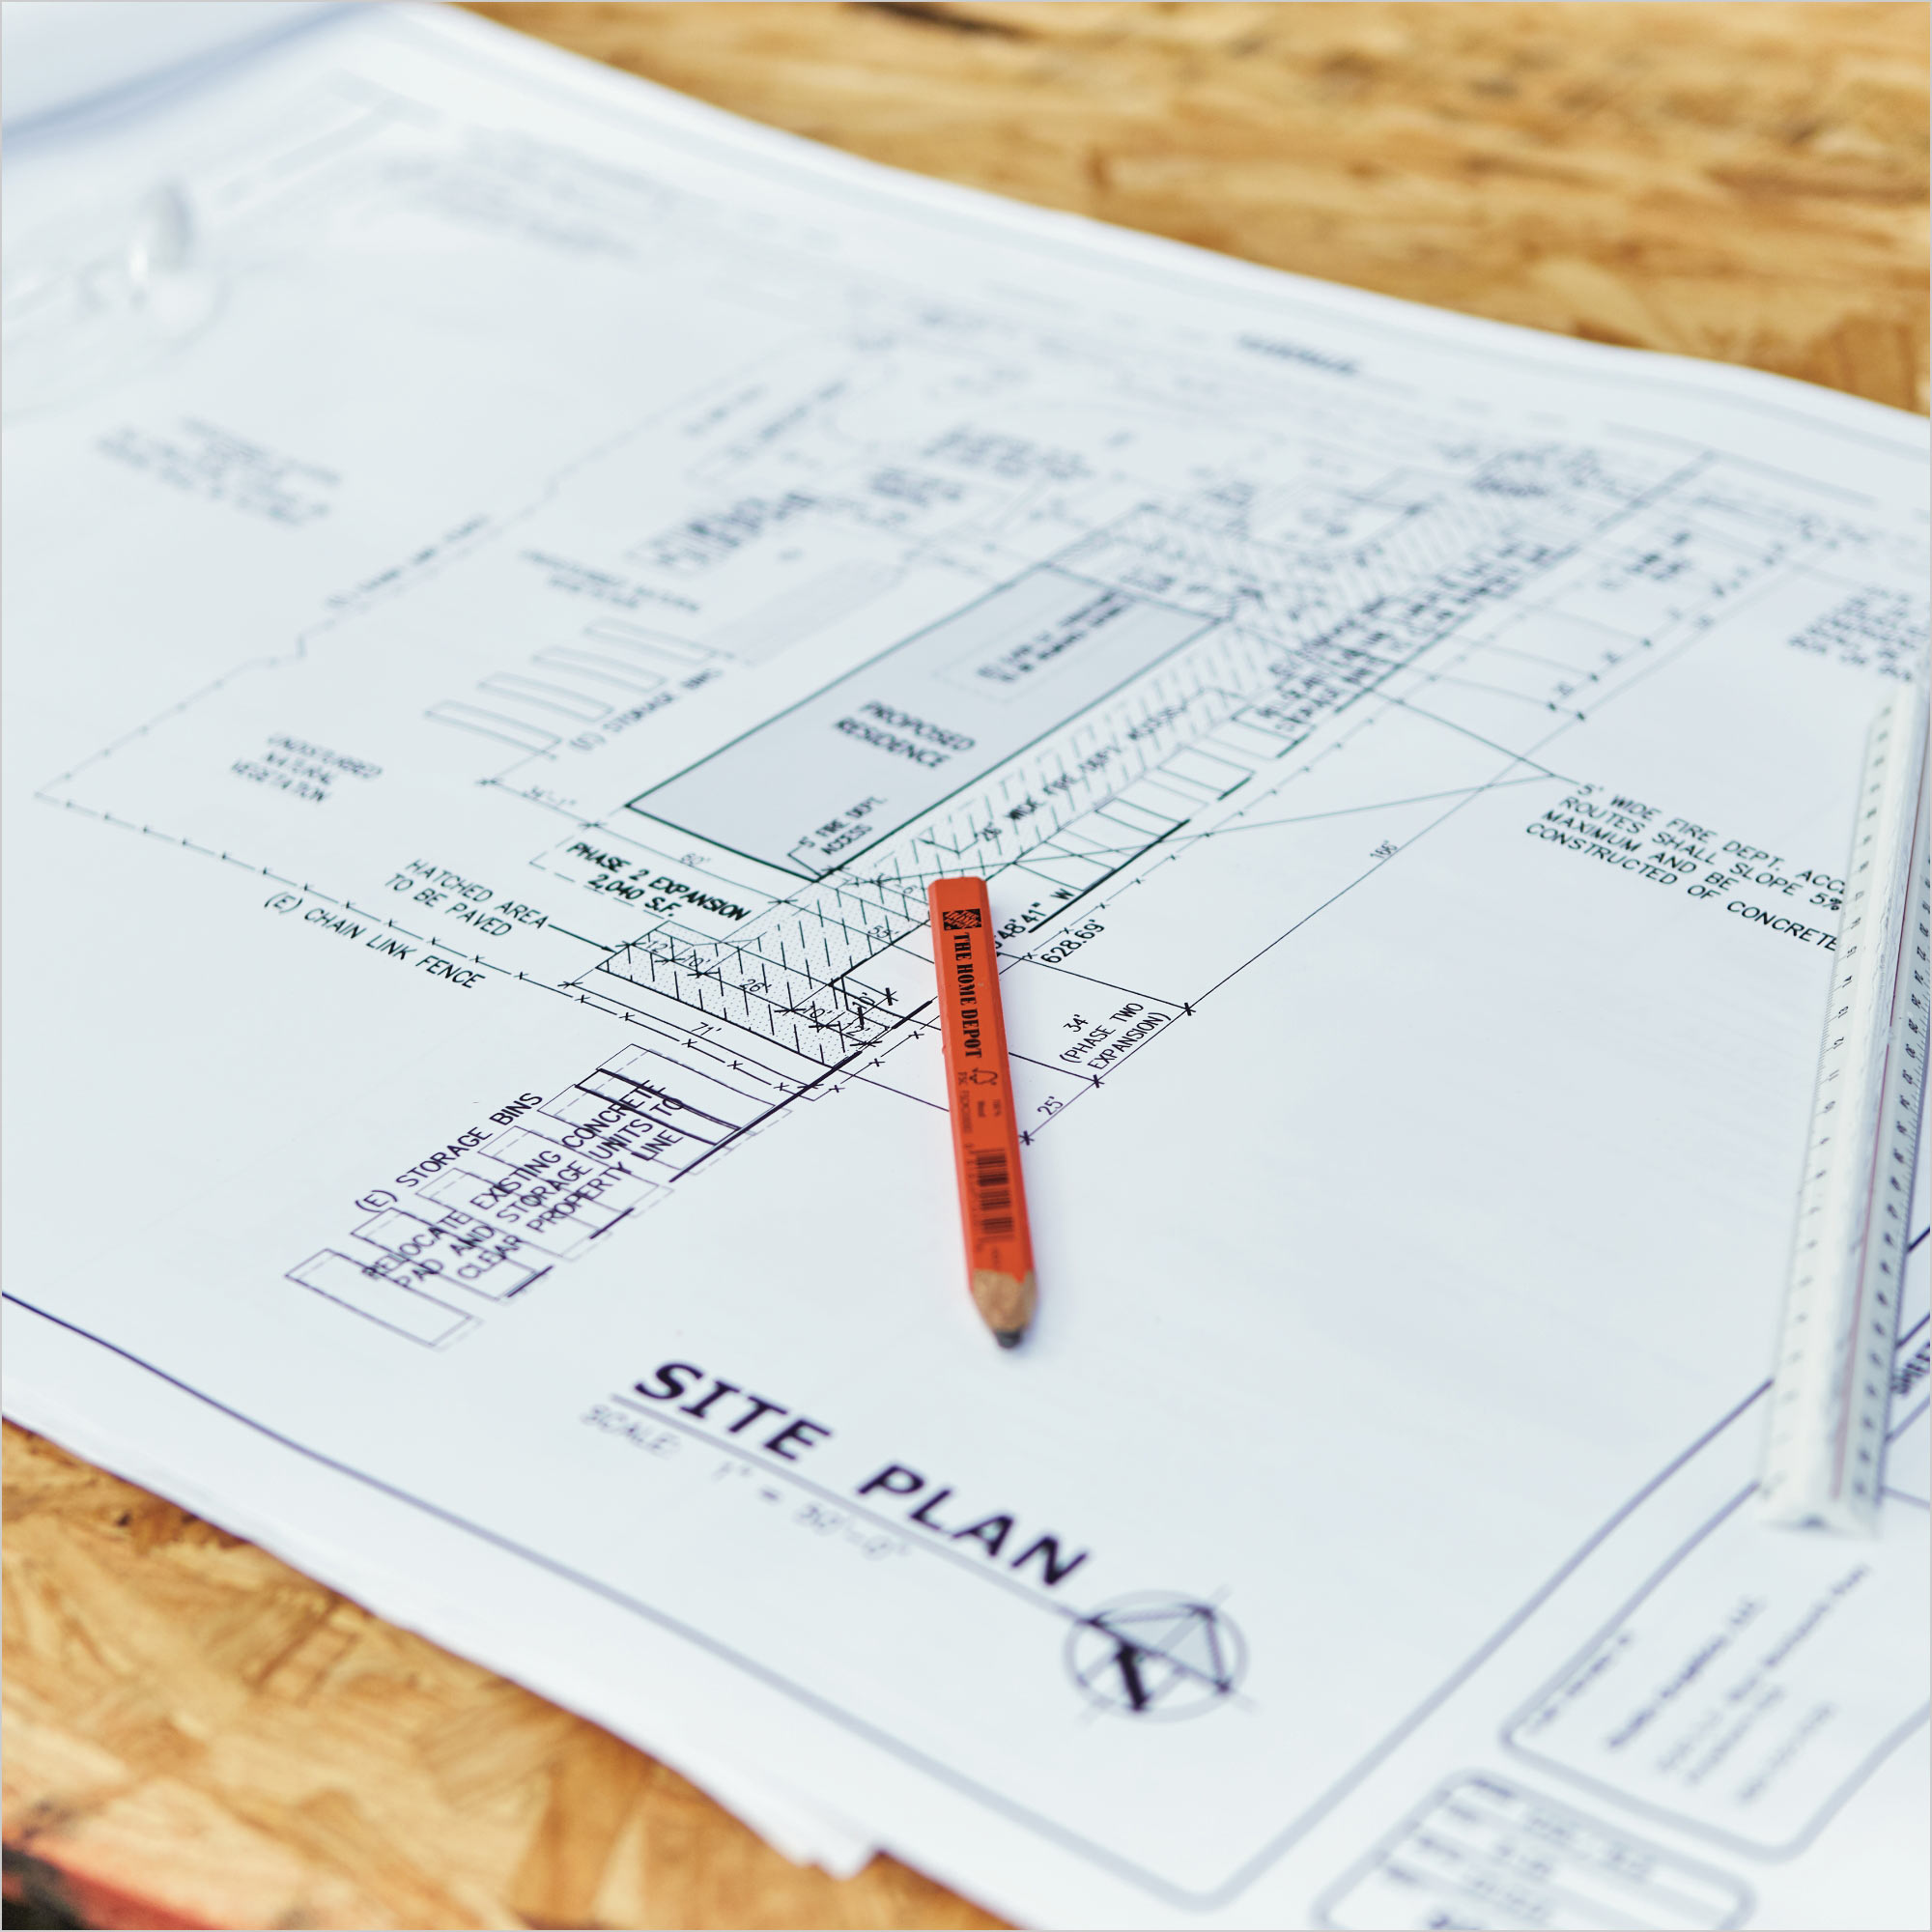 A set of blueprints at a construction site.